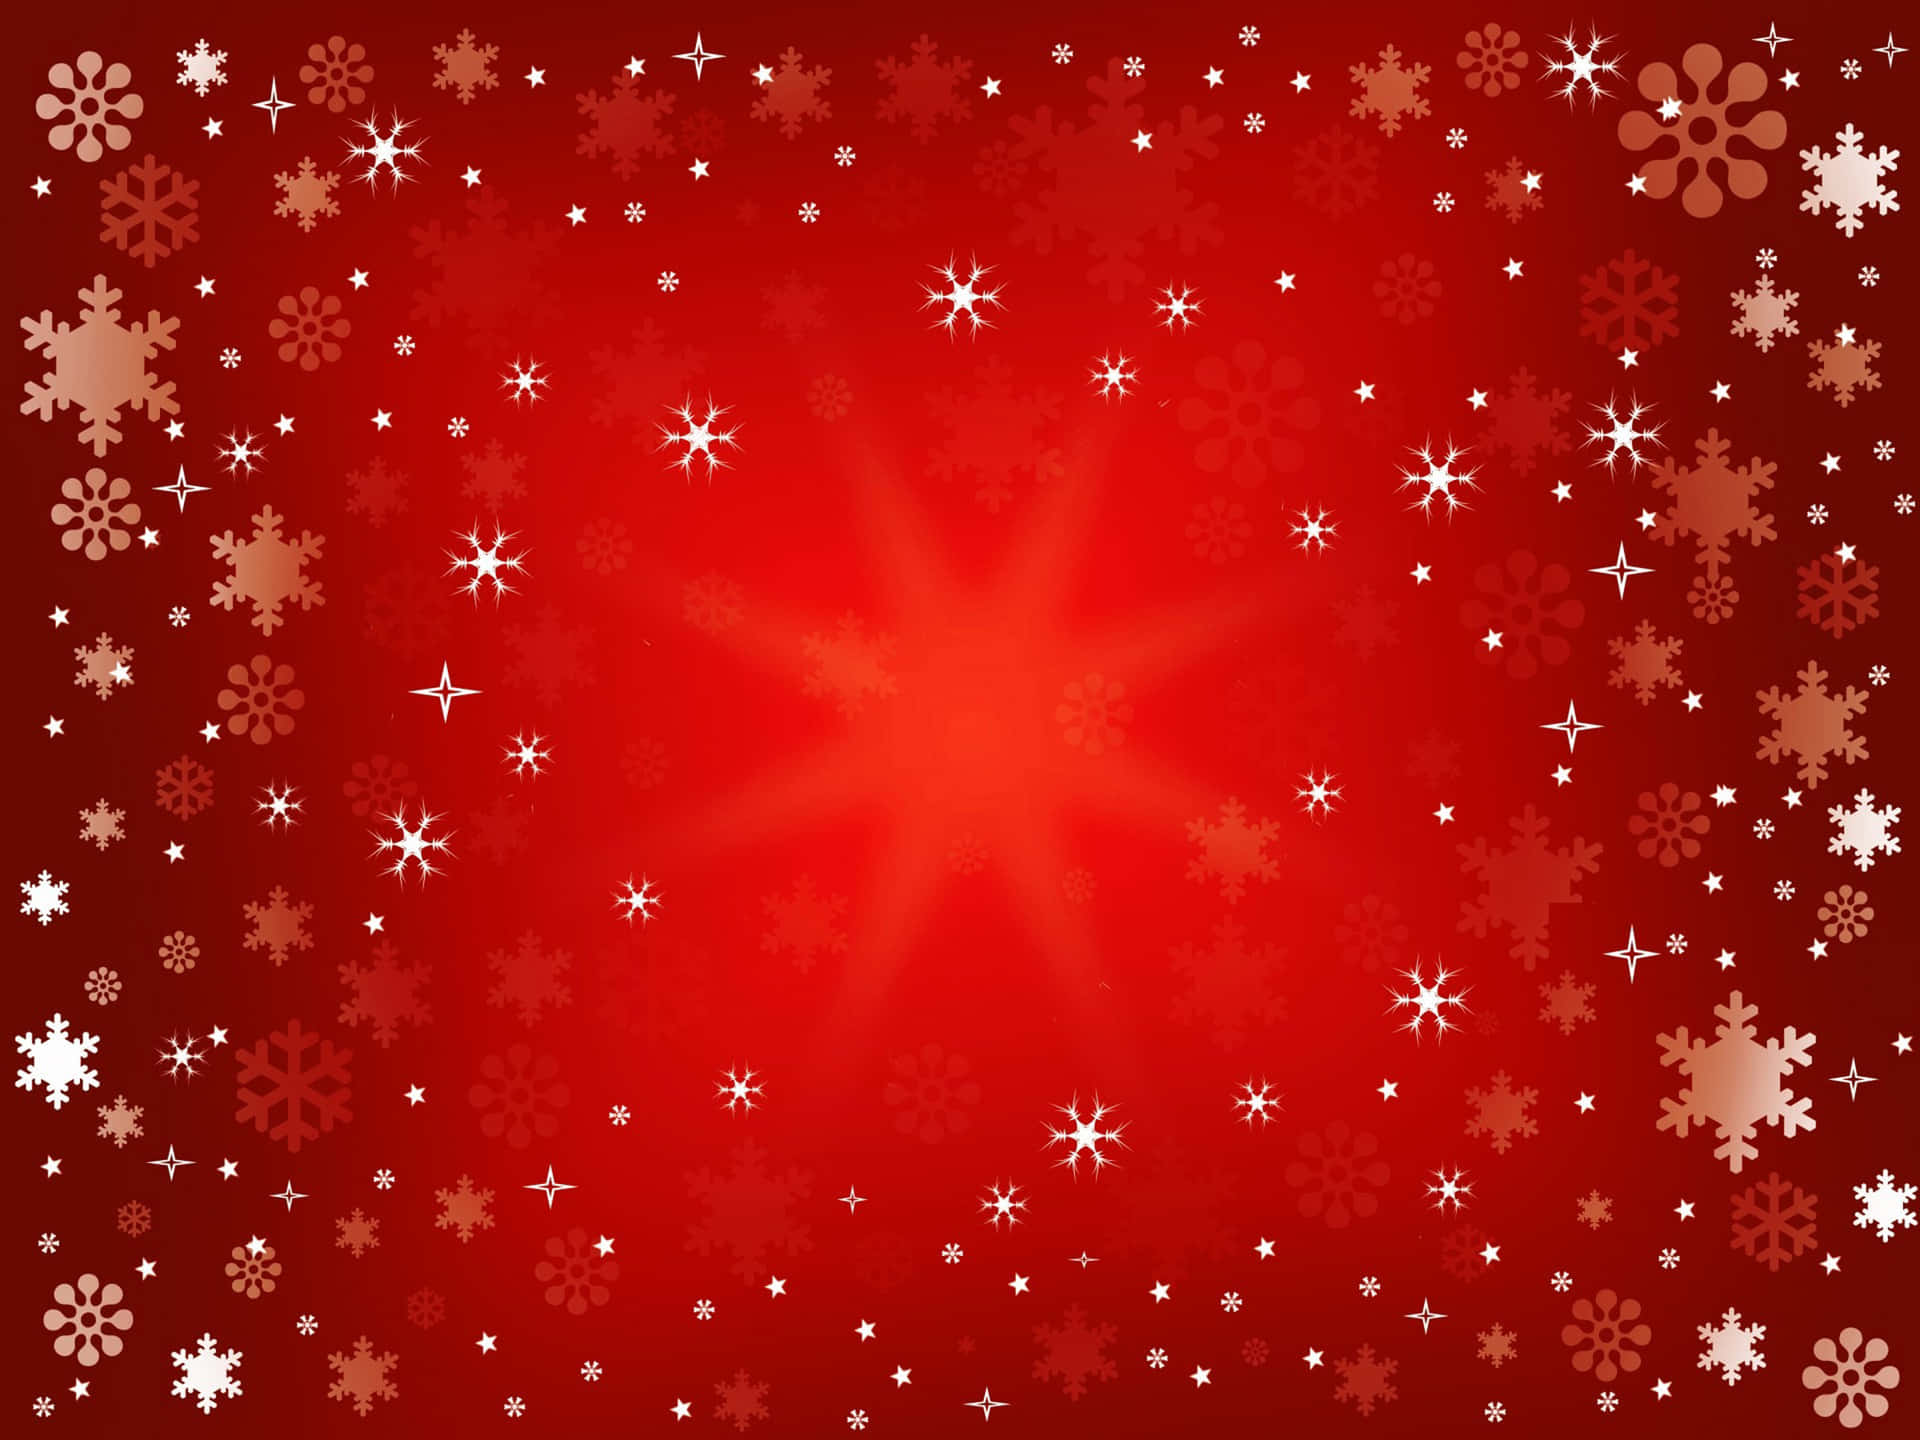 Feiernsie Die Festtagssaison Mit Lebendigen Roten Weihnachtsdekorationen.